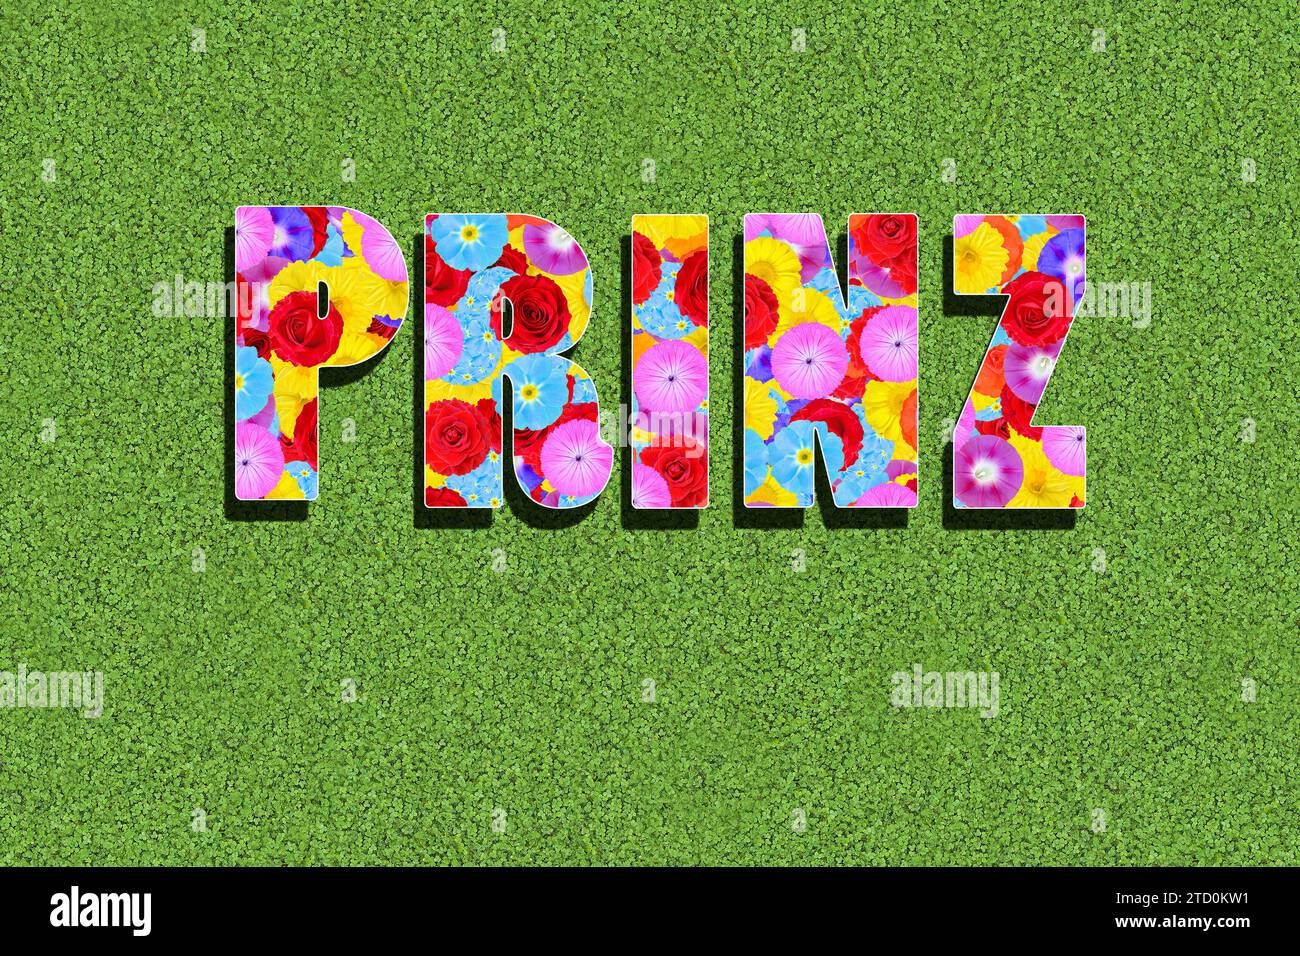 Das deutsche Wort Prinz, Prinz, geschrieben mit bunten Blumen auf grünem Hintergrund, Wiese, Grafik, Text Stockfoto